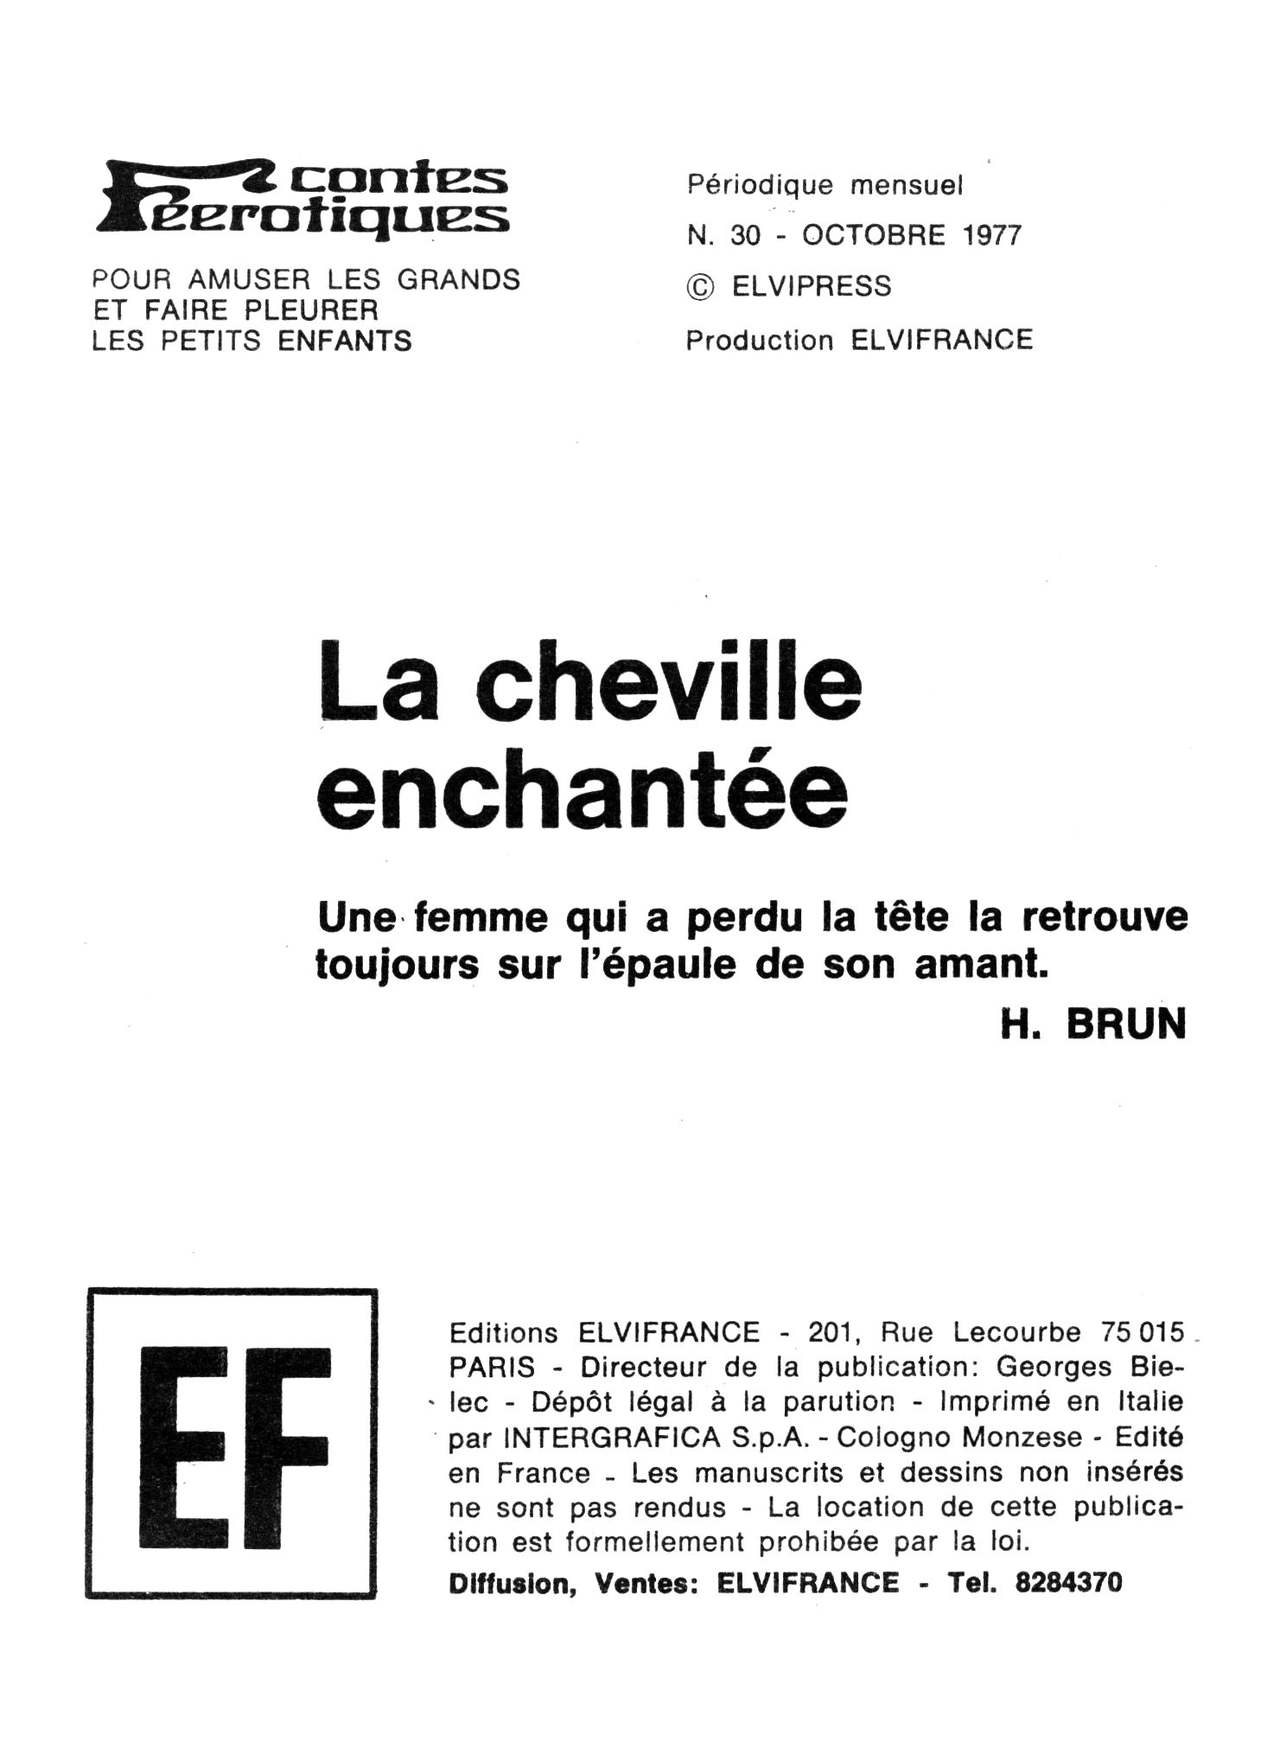 Elvifrance - Contes feerotiques - 030 - La cheville enchantée numero d'image 2